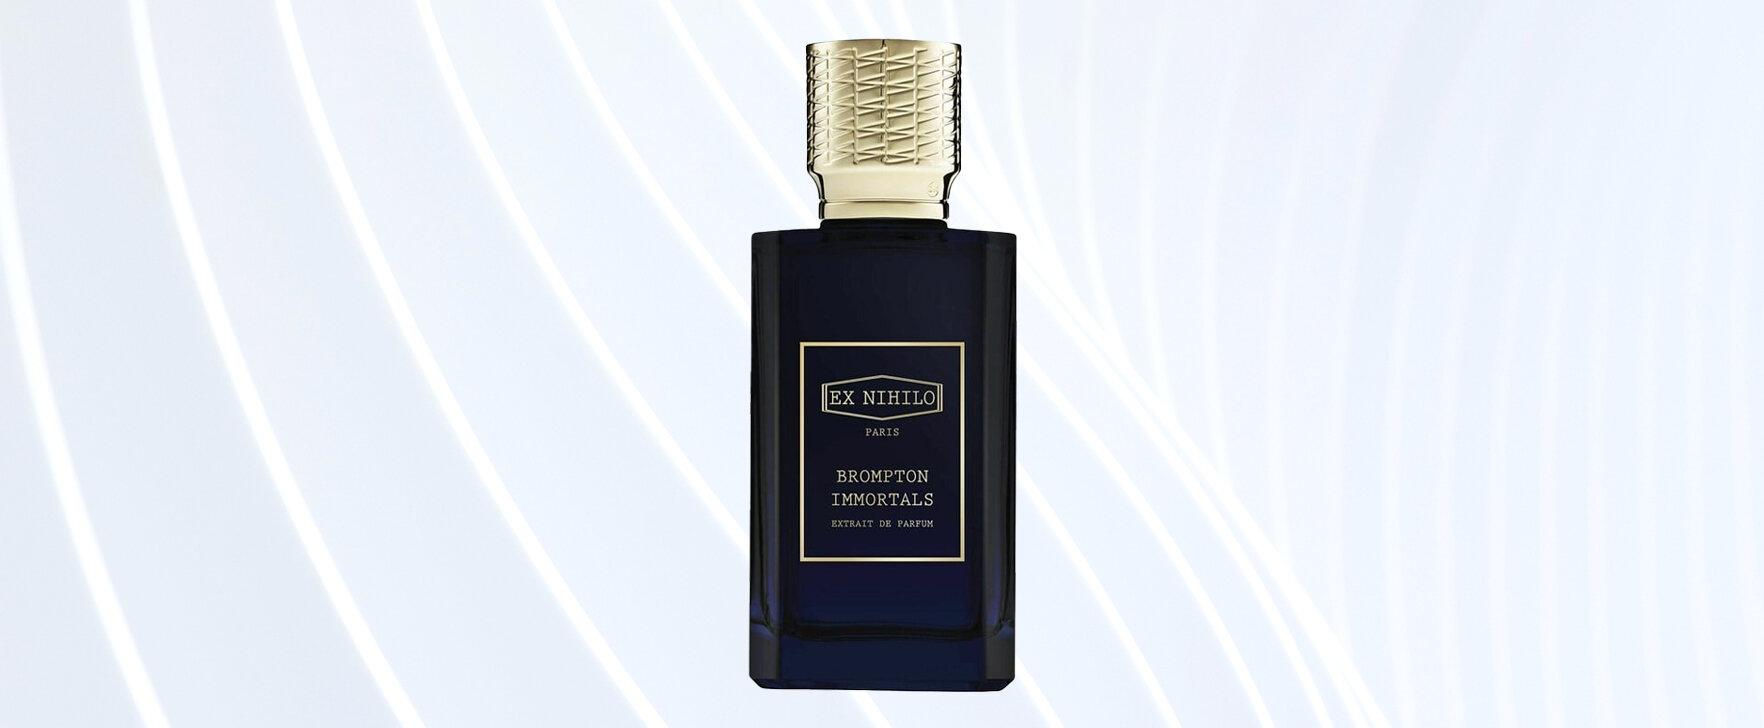 Brompton Immortals (Extrait de Parfum) by Ex Nihilo: An Intensified Version of the Eau de Parfum